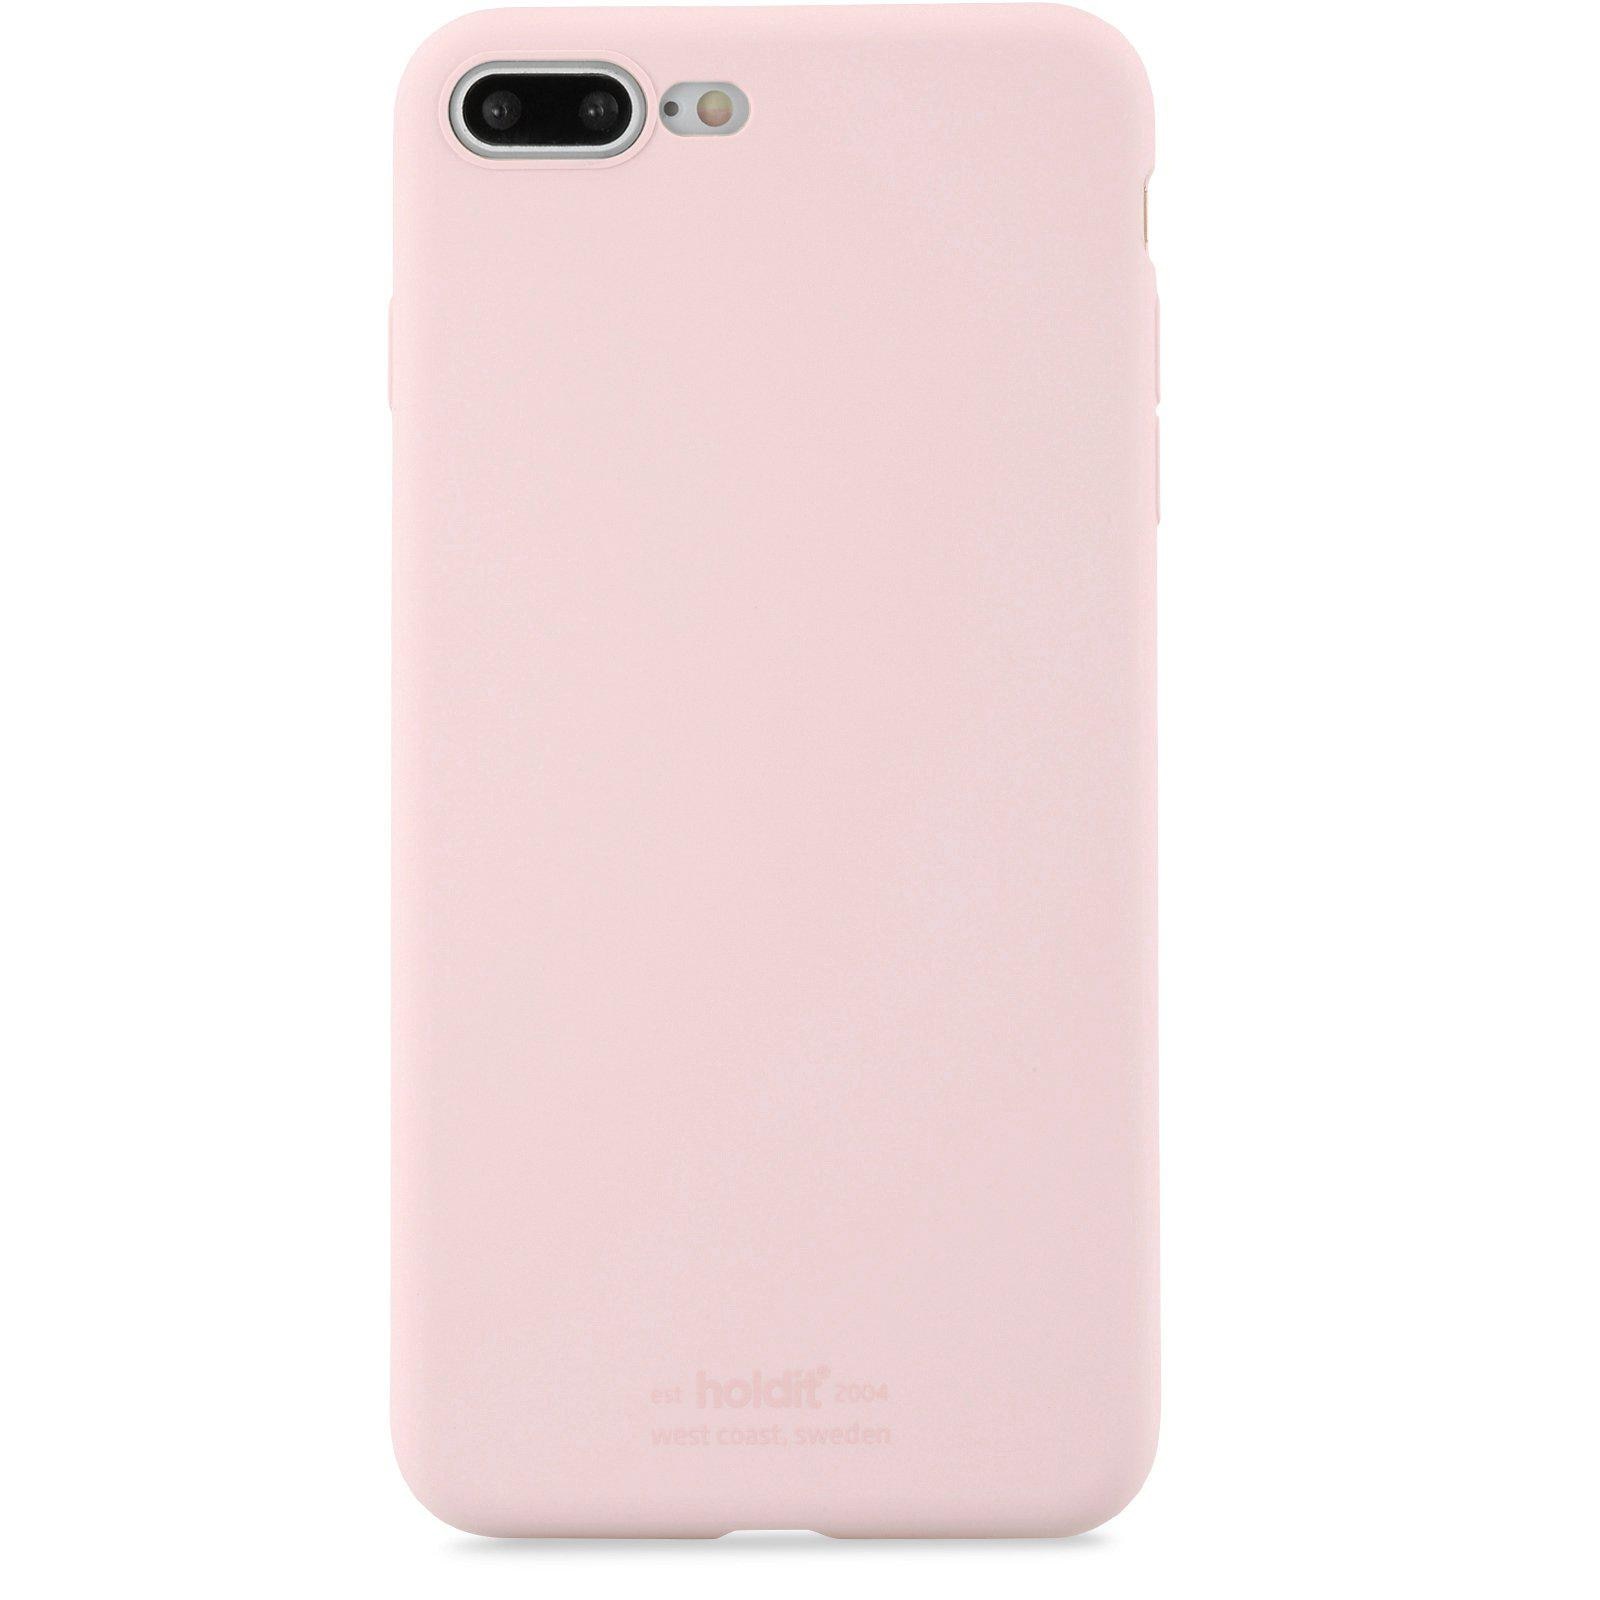 Silikonskal iPhone 7 Plus/8 Plus Blush Pink